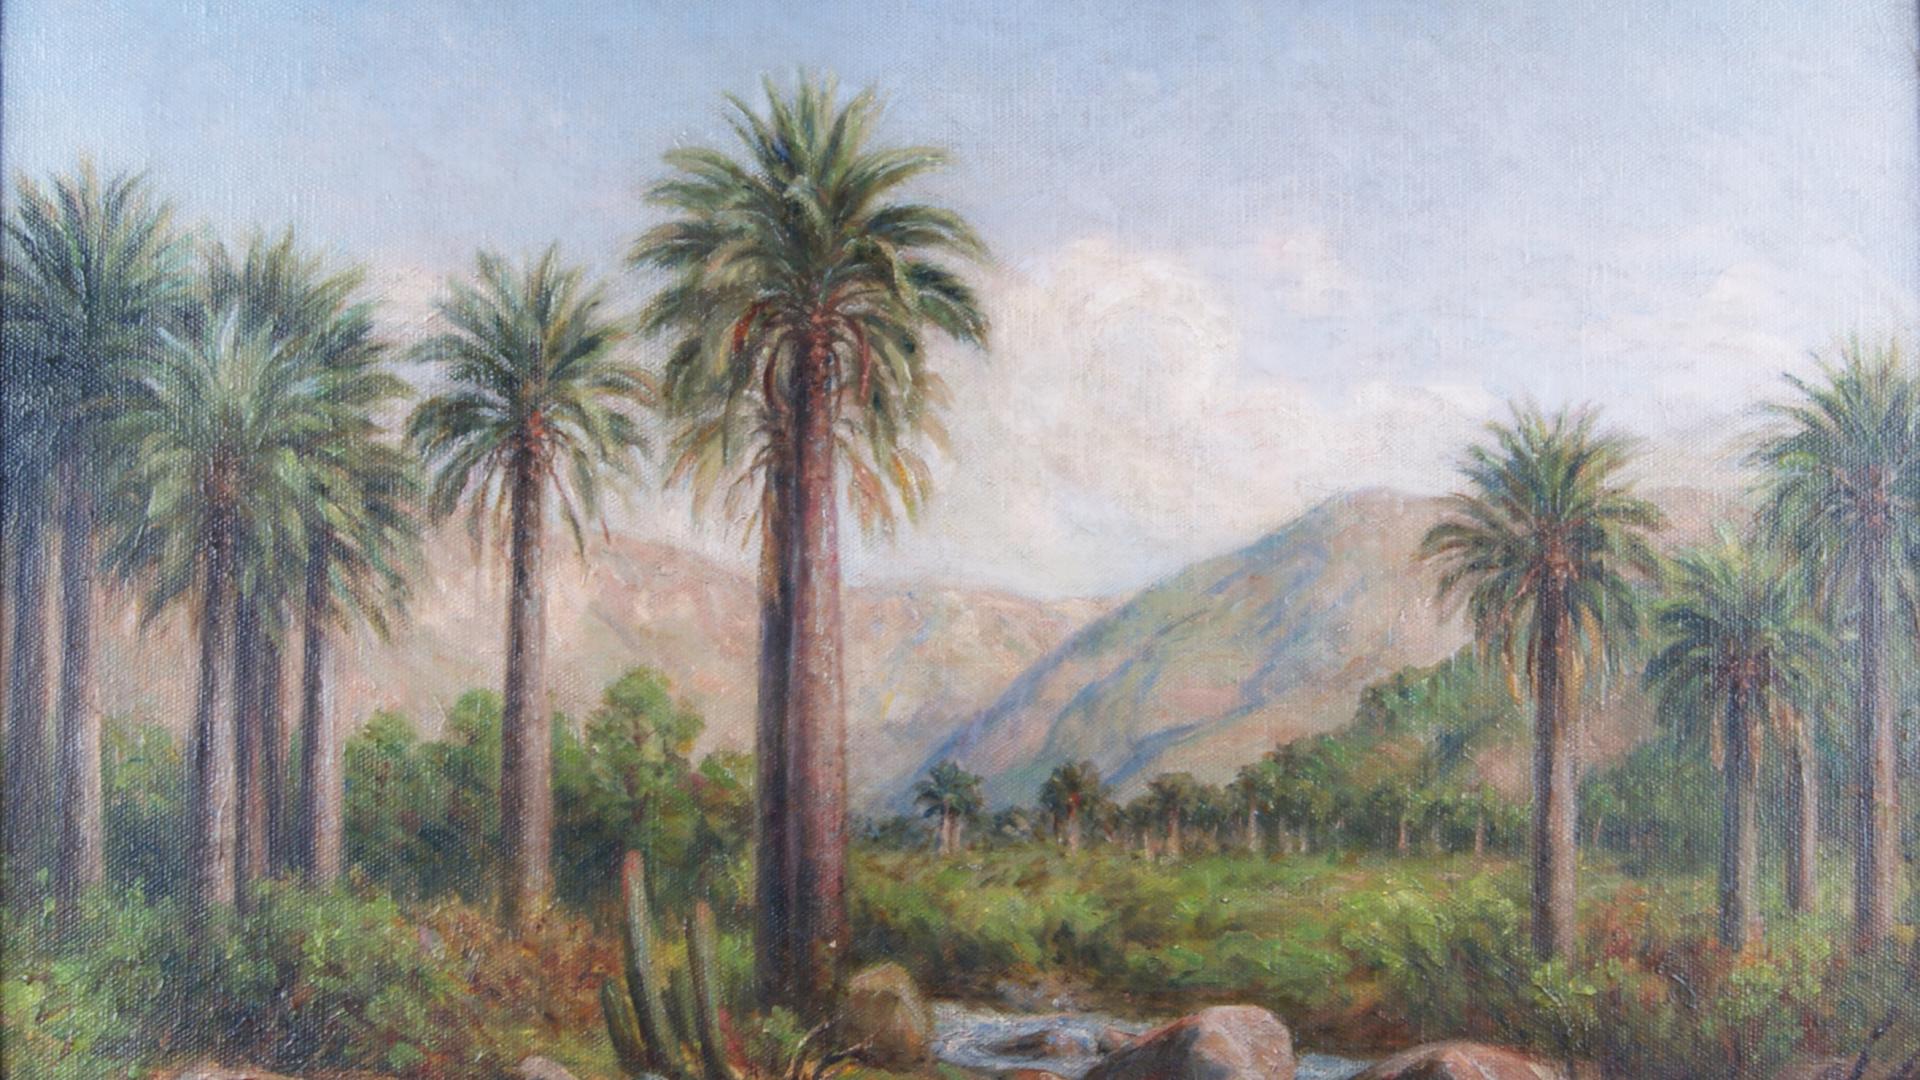 Composición en base a un paisaje con palmas chilenas, arbustos, árboles y arrollo. De fondo pequeños cerros en tonos marrones, cielo y nubes.